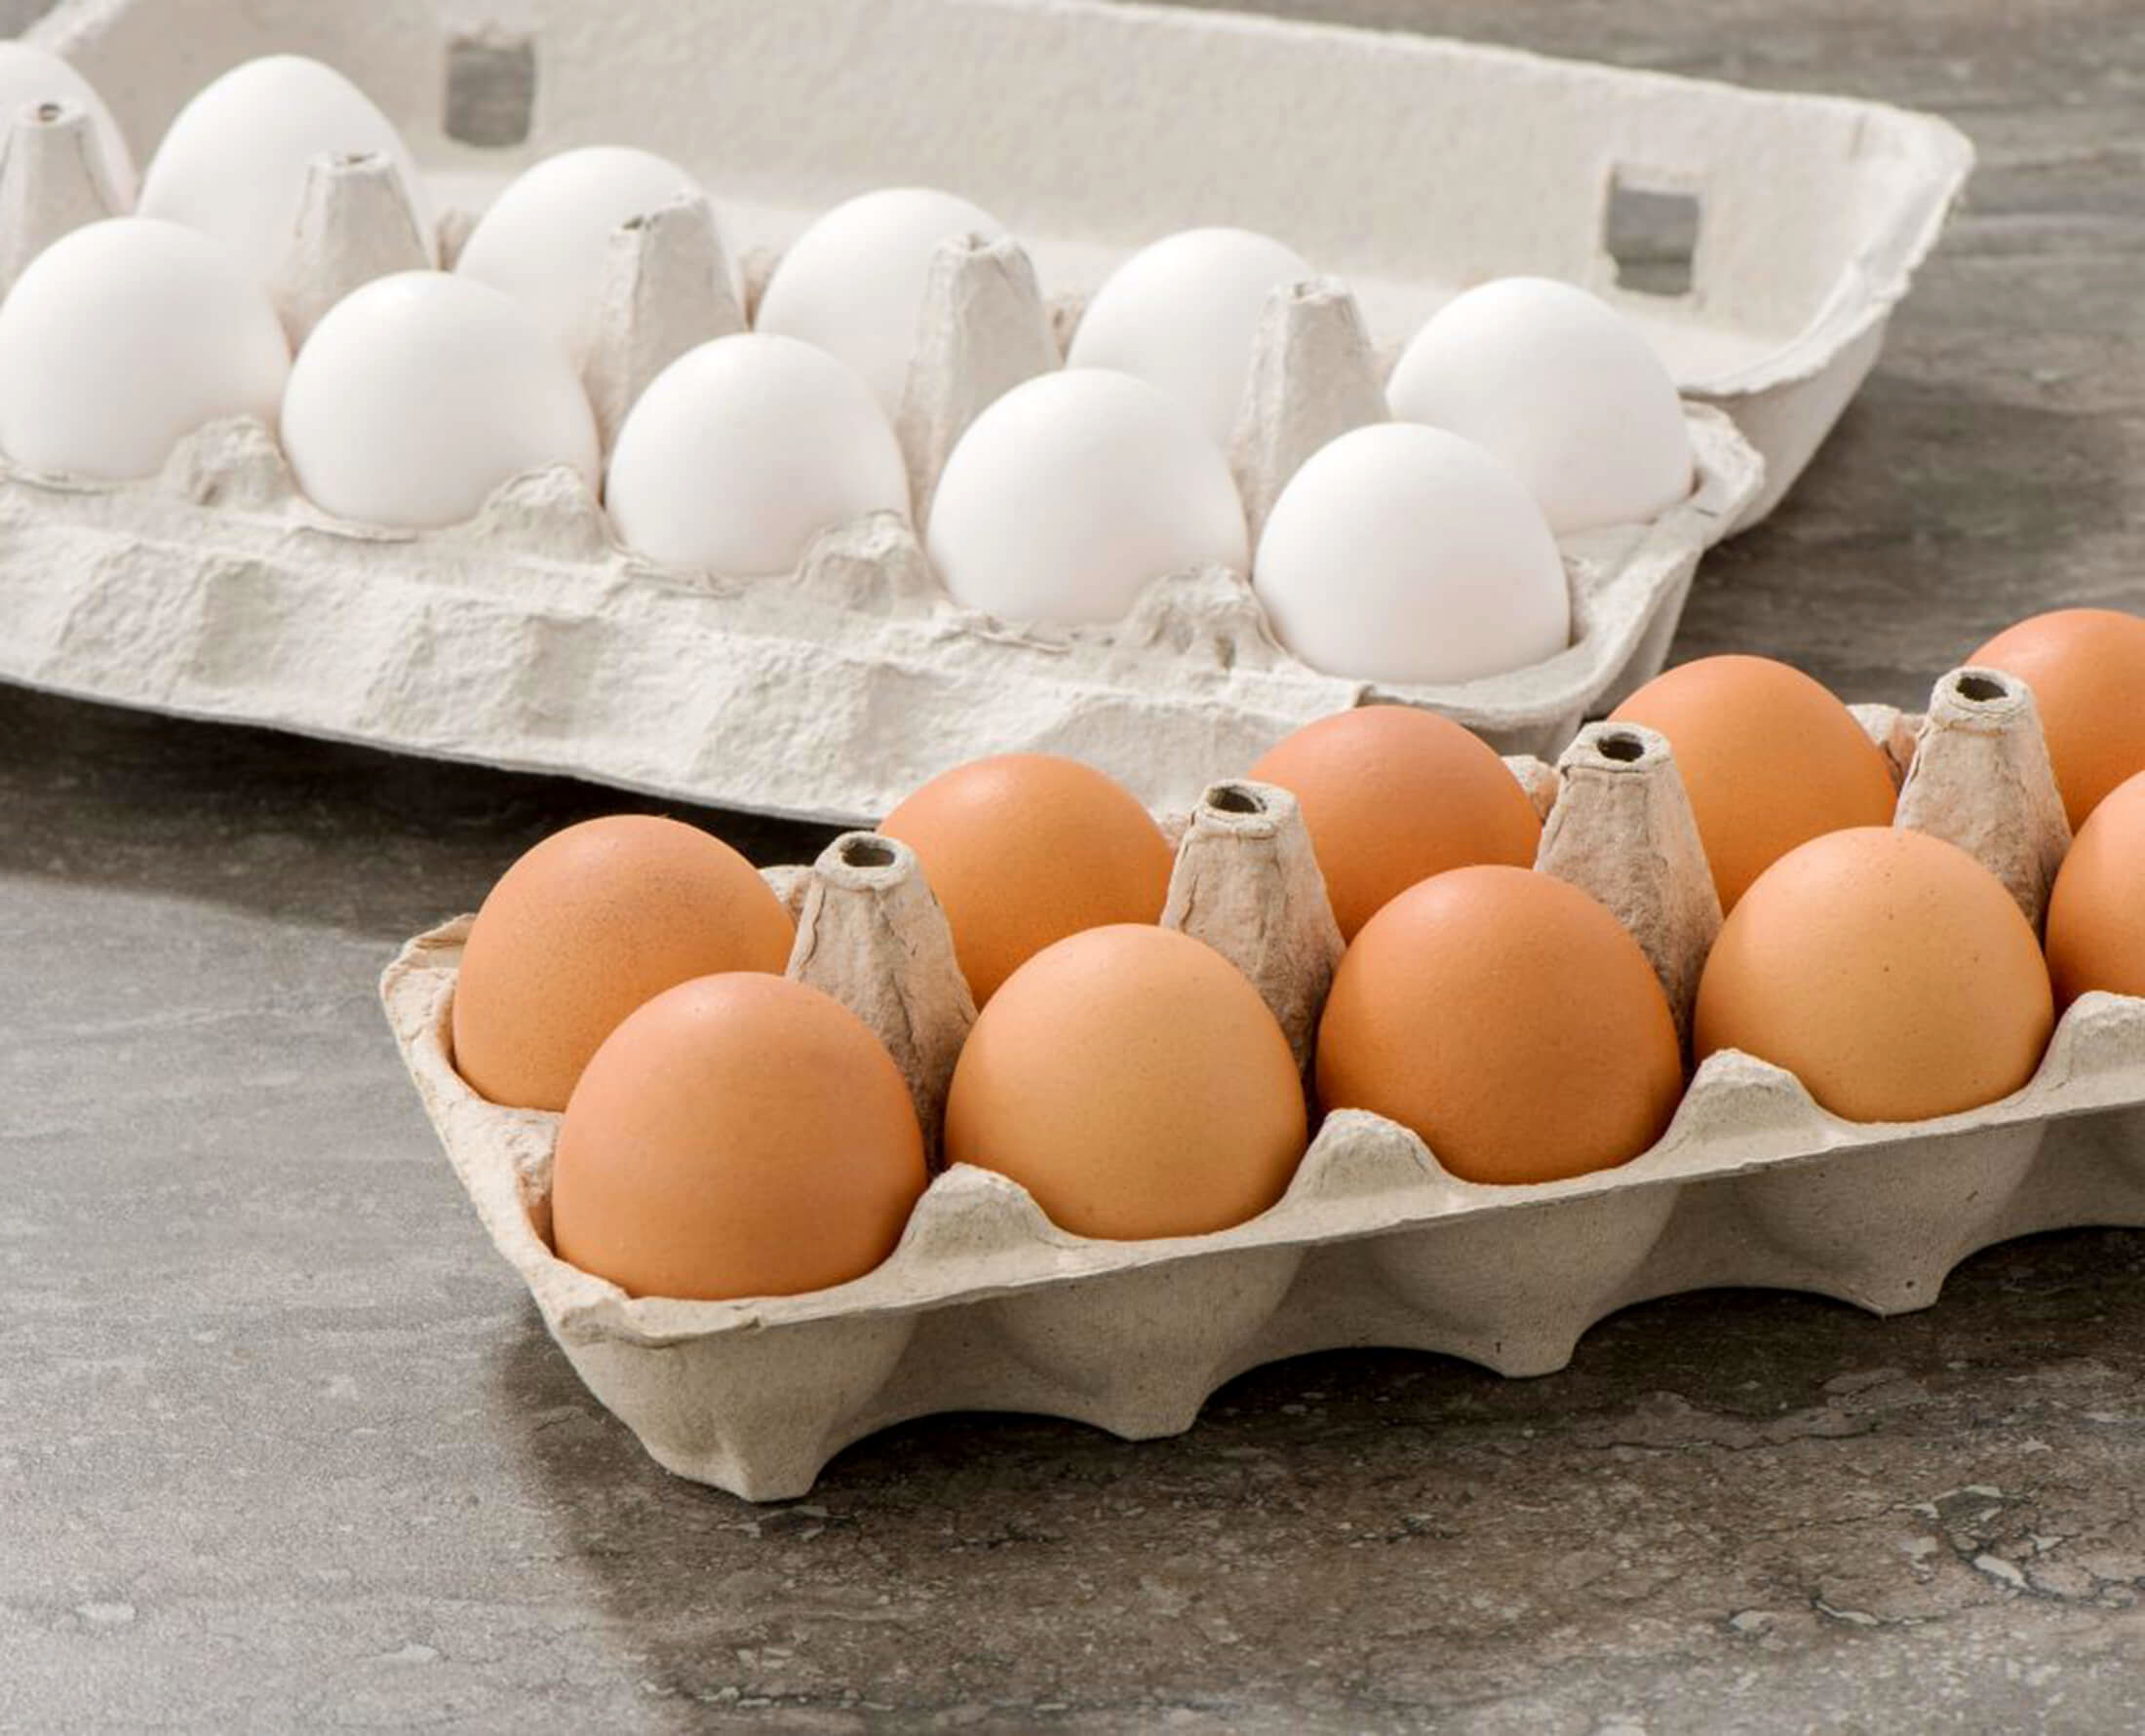 قیمت واقعی هر شانه تخم مرغ ۳۶ هزار تومان